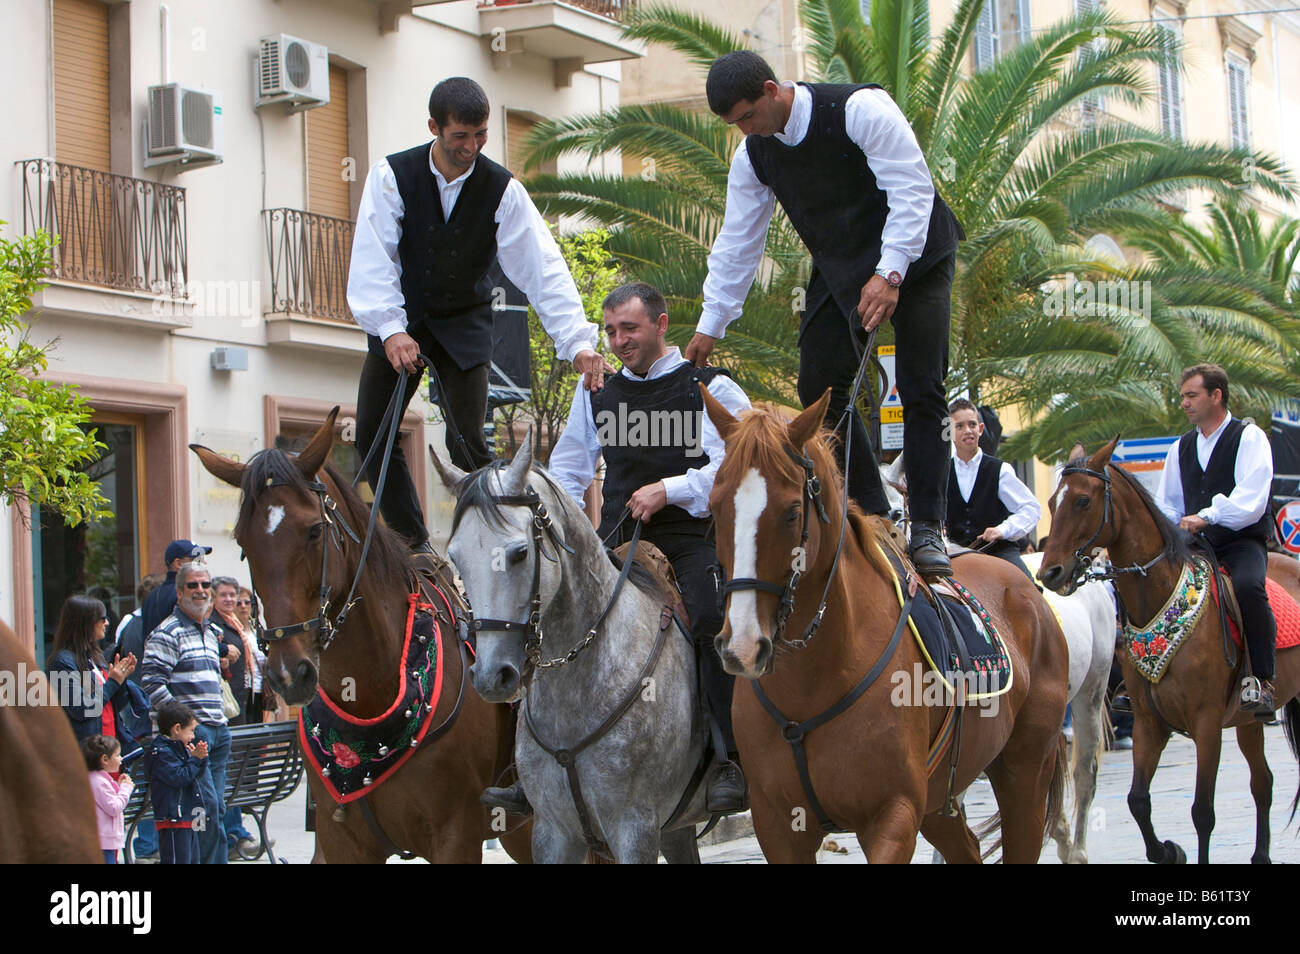 Les hommes de l'équitation tout en portant des costumes traditionnels à la Cavalcata Sarda parade à Sassari, Sardaigne, Italie, Europe Banque D'Images